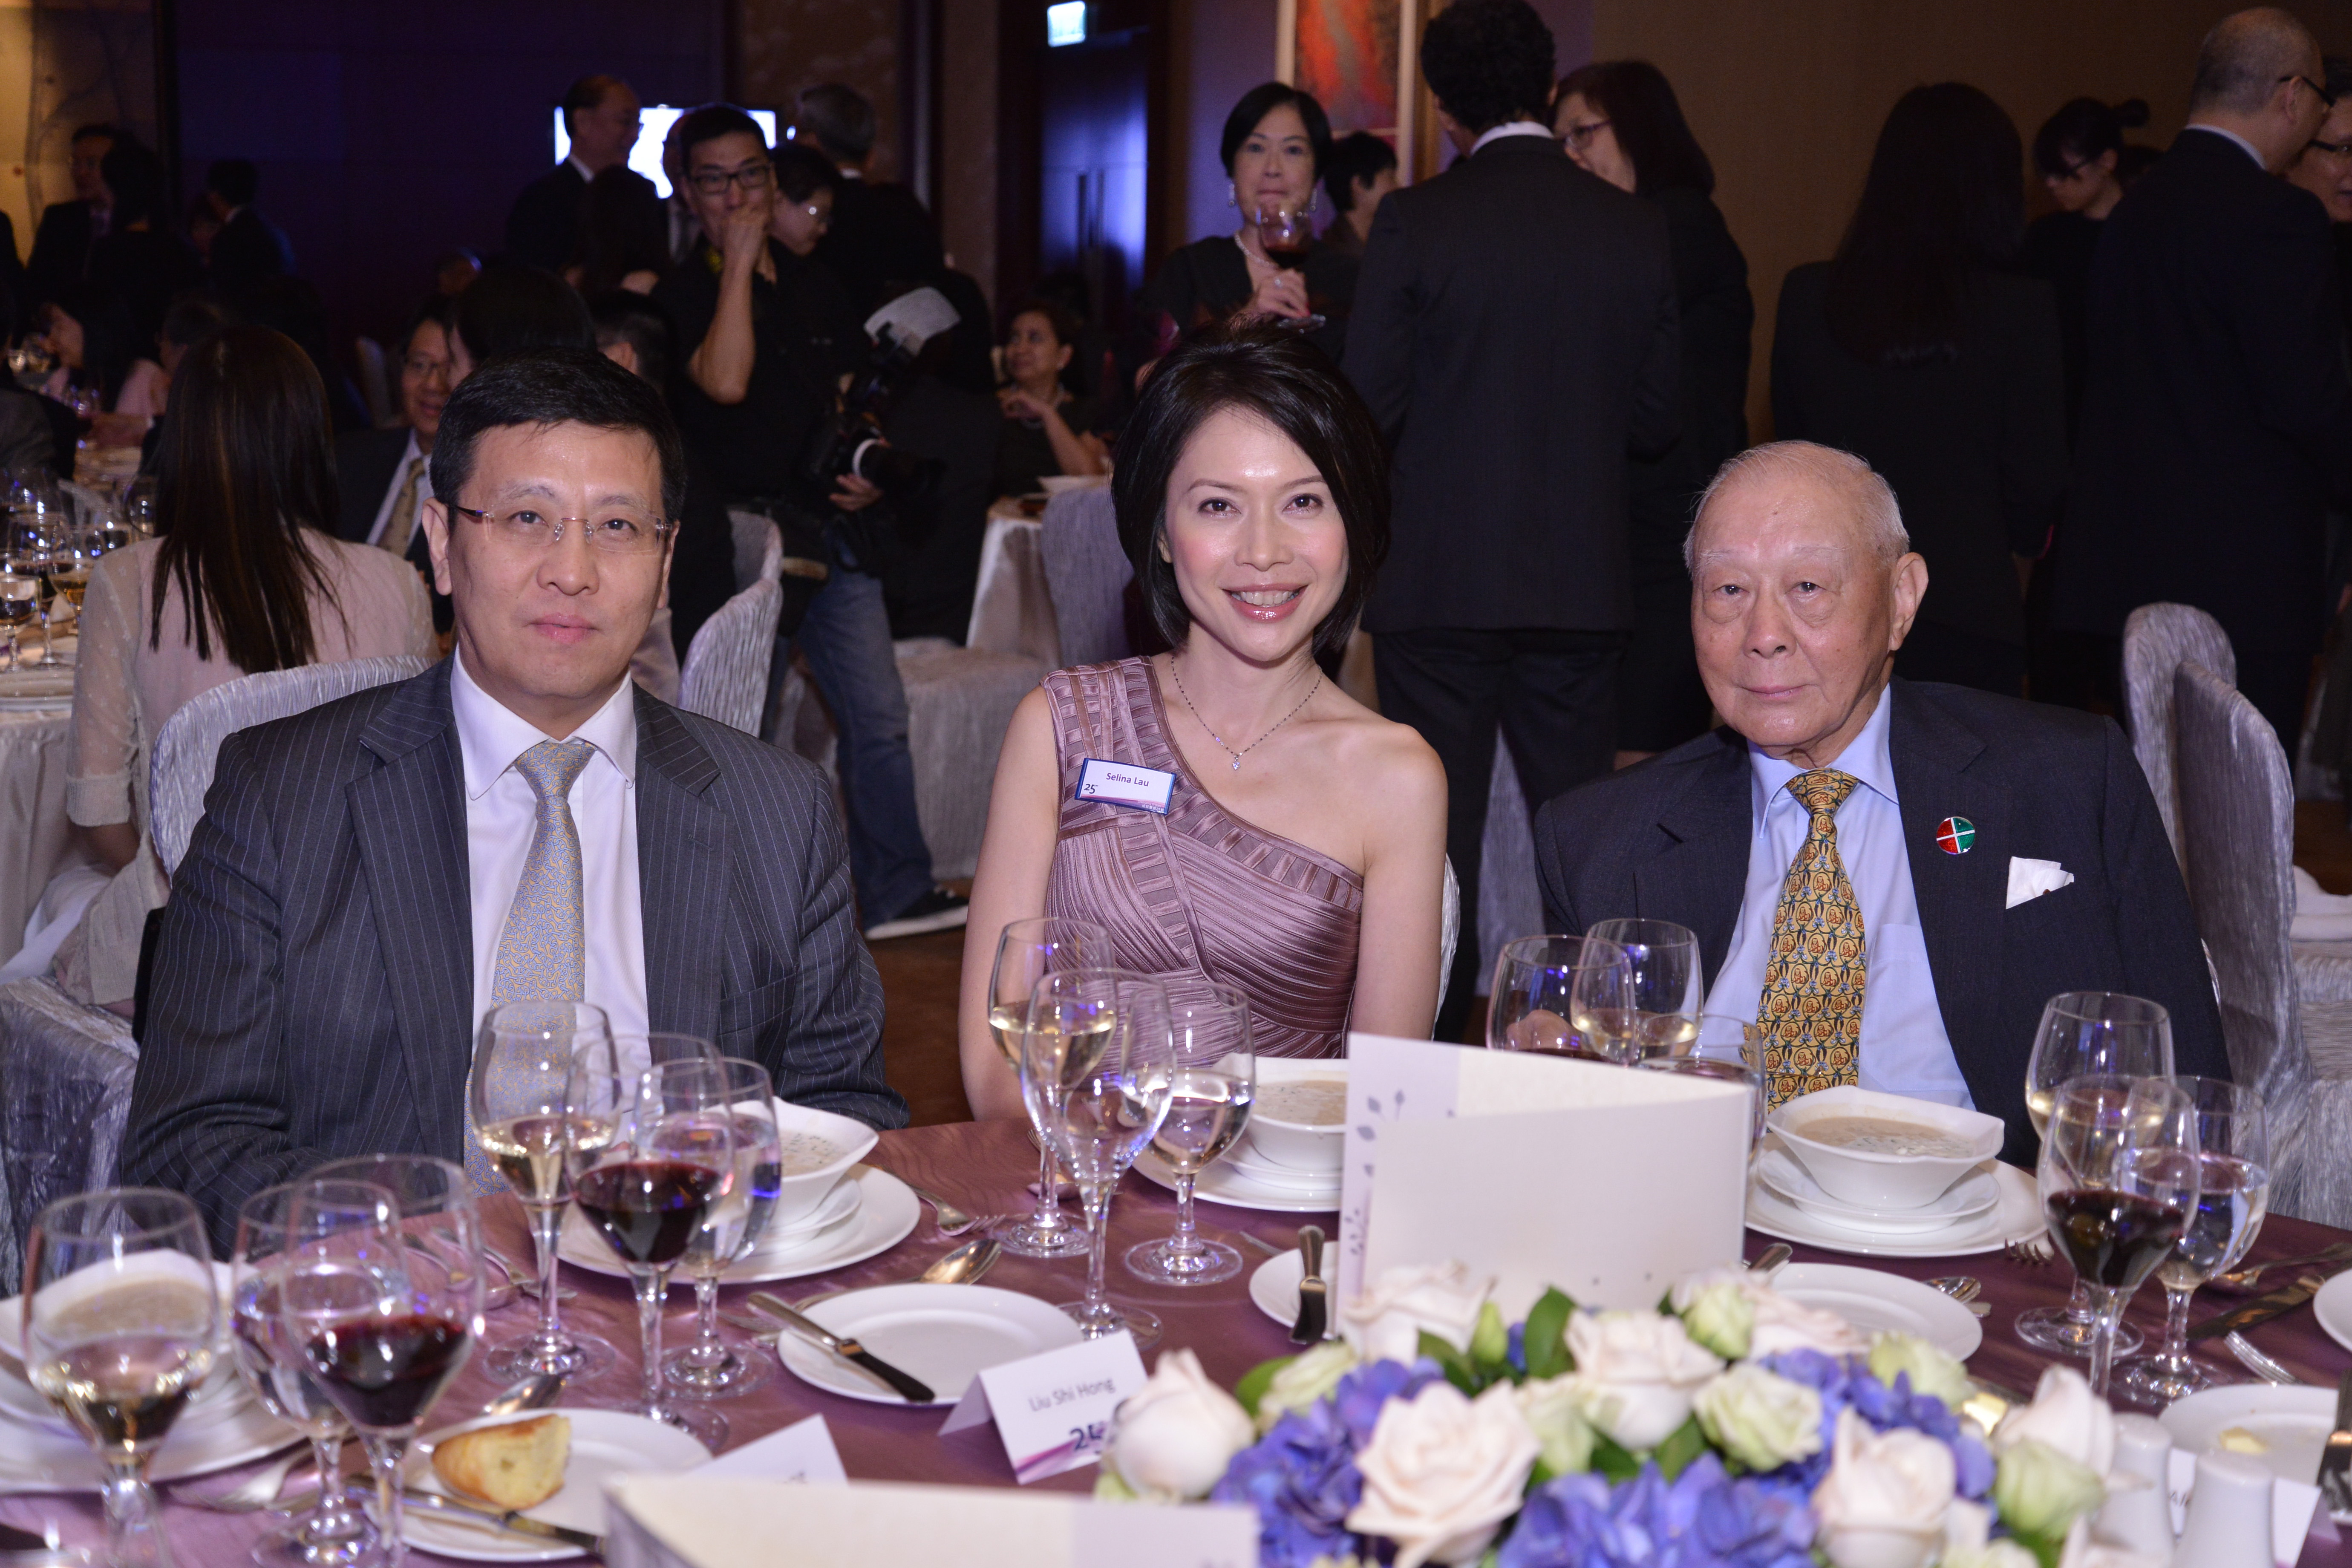 HKFI Celebrating 25 Years – Gala Dinner (2)